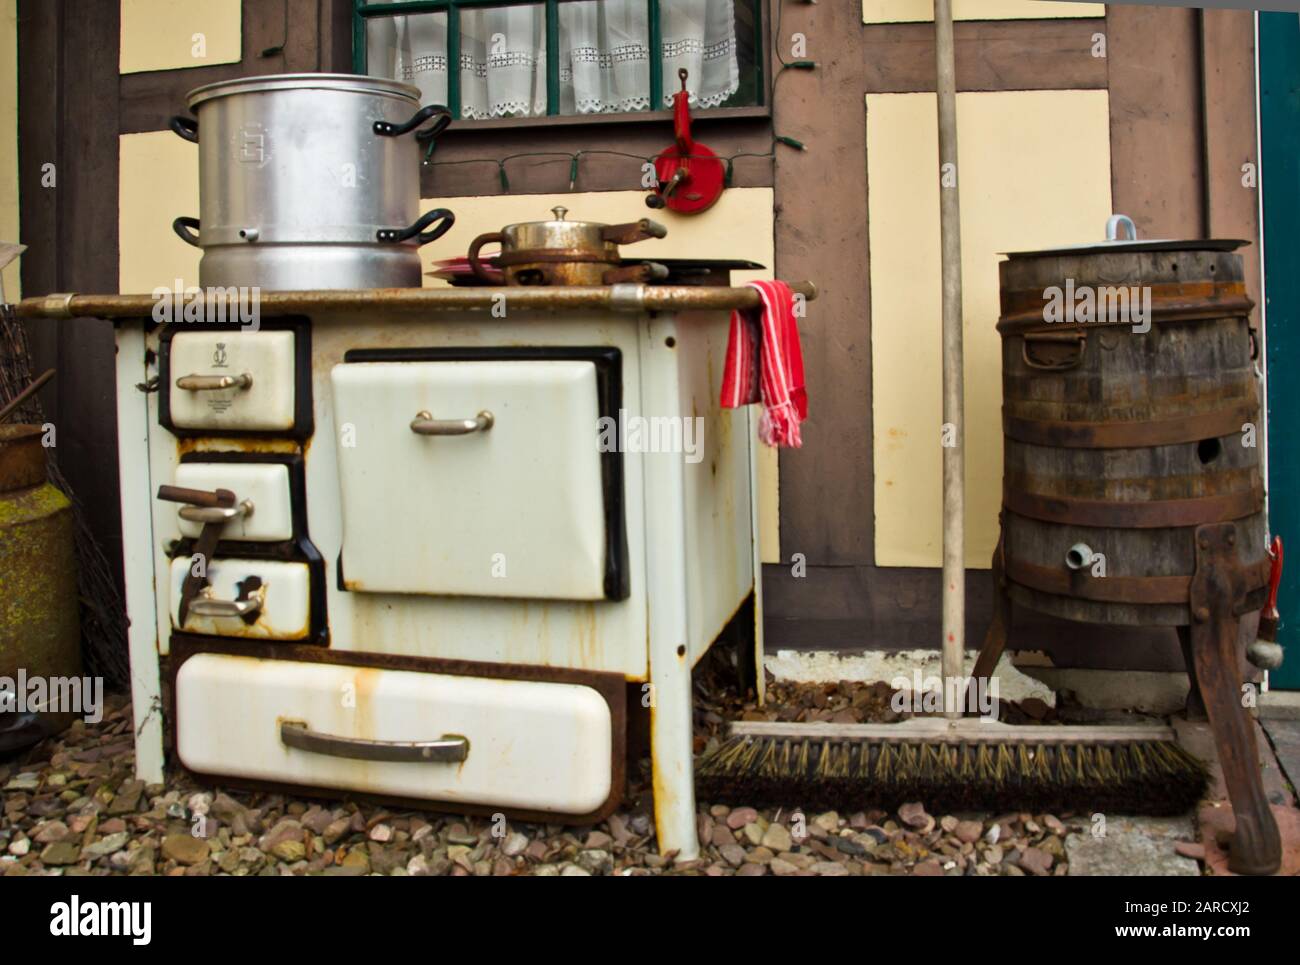 Ein alter Herd aus Metall, Vintage, historisch zum Kochen mit echtem Feuer  Stockfotografie - Alamy